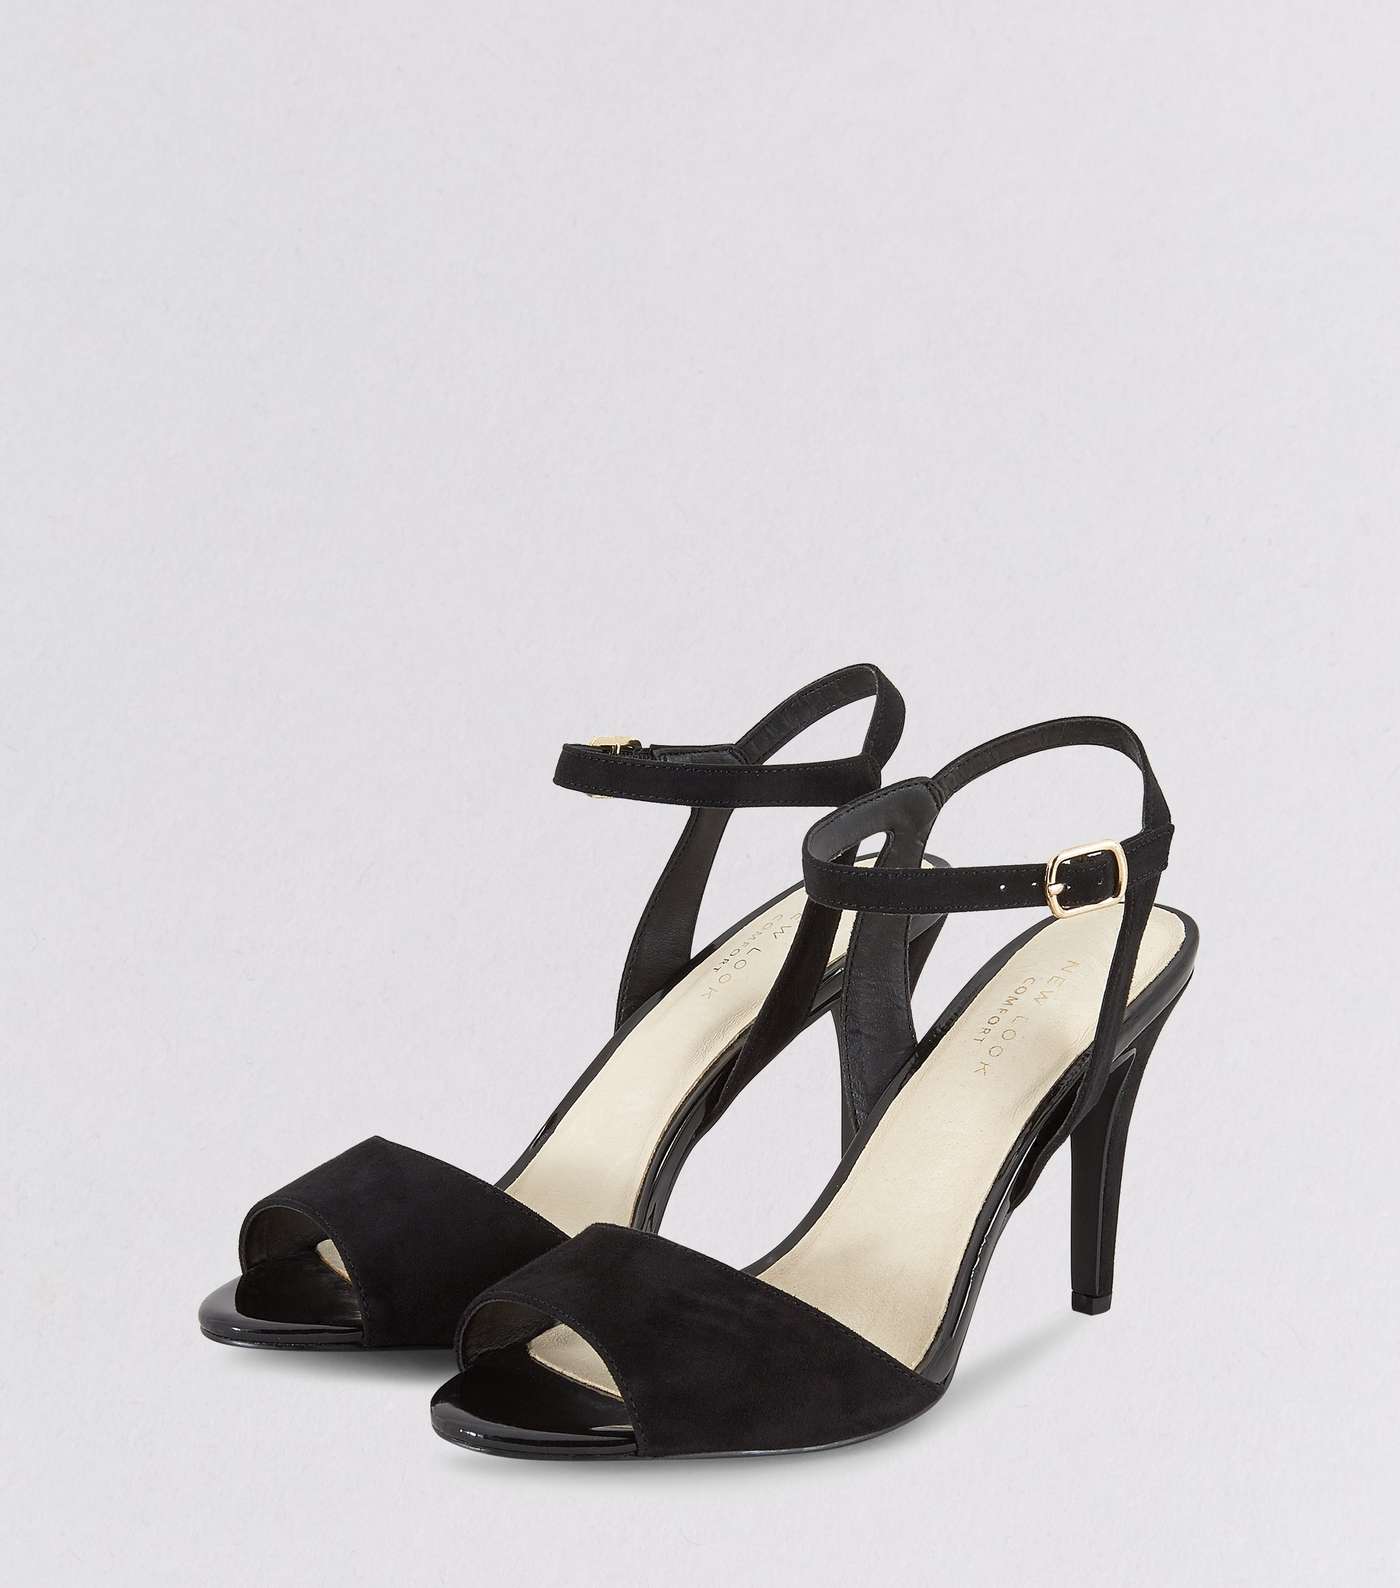 Black Comfort Suedette Ankle Strap Heels Image 3